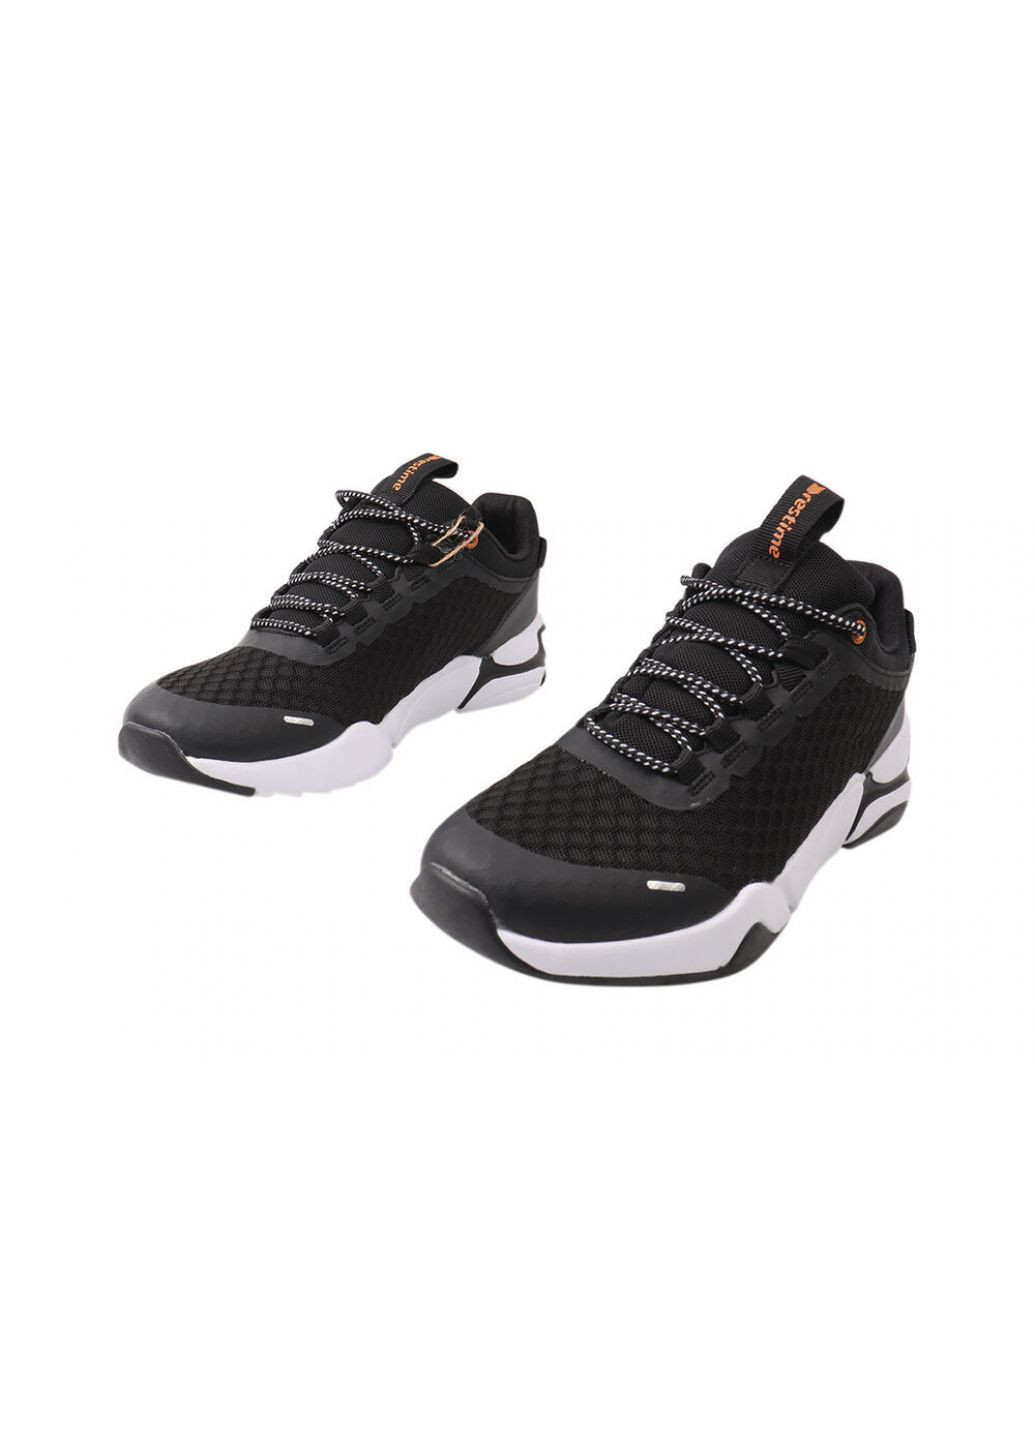 Чорні кросівки чоловічі з текстилю, на низькому ходу, на шнурівці, колір чорний, україна Restime 144-21LK